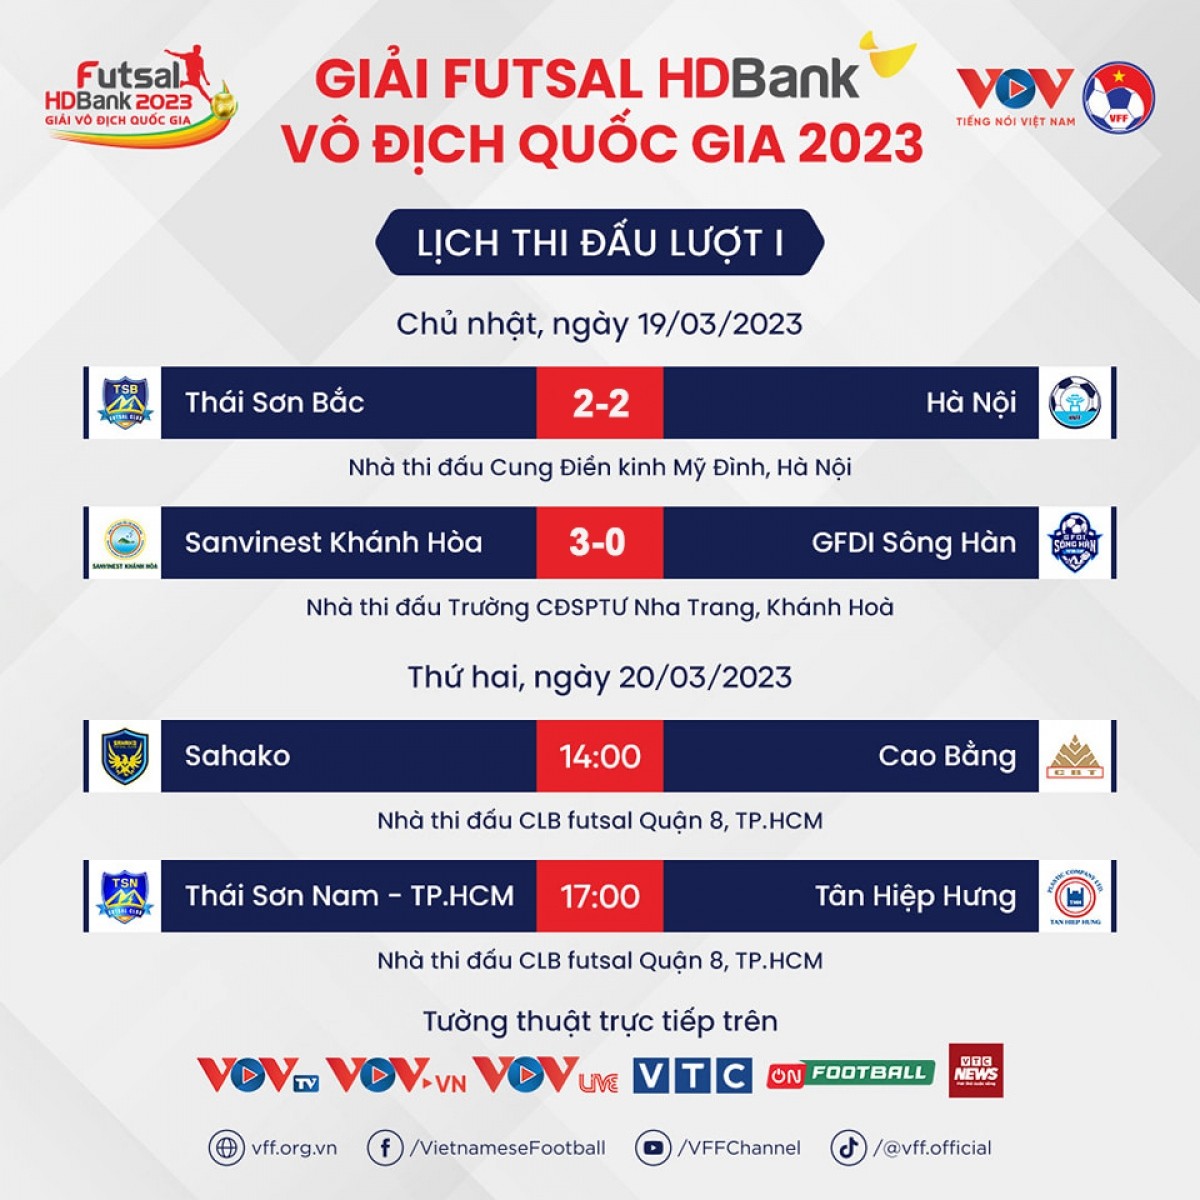 Lịch thi đấu giải Futsal HDBank VĐQG 2023. (Ảnh: VOV)